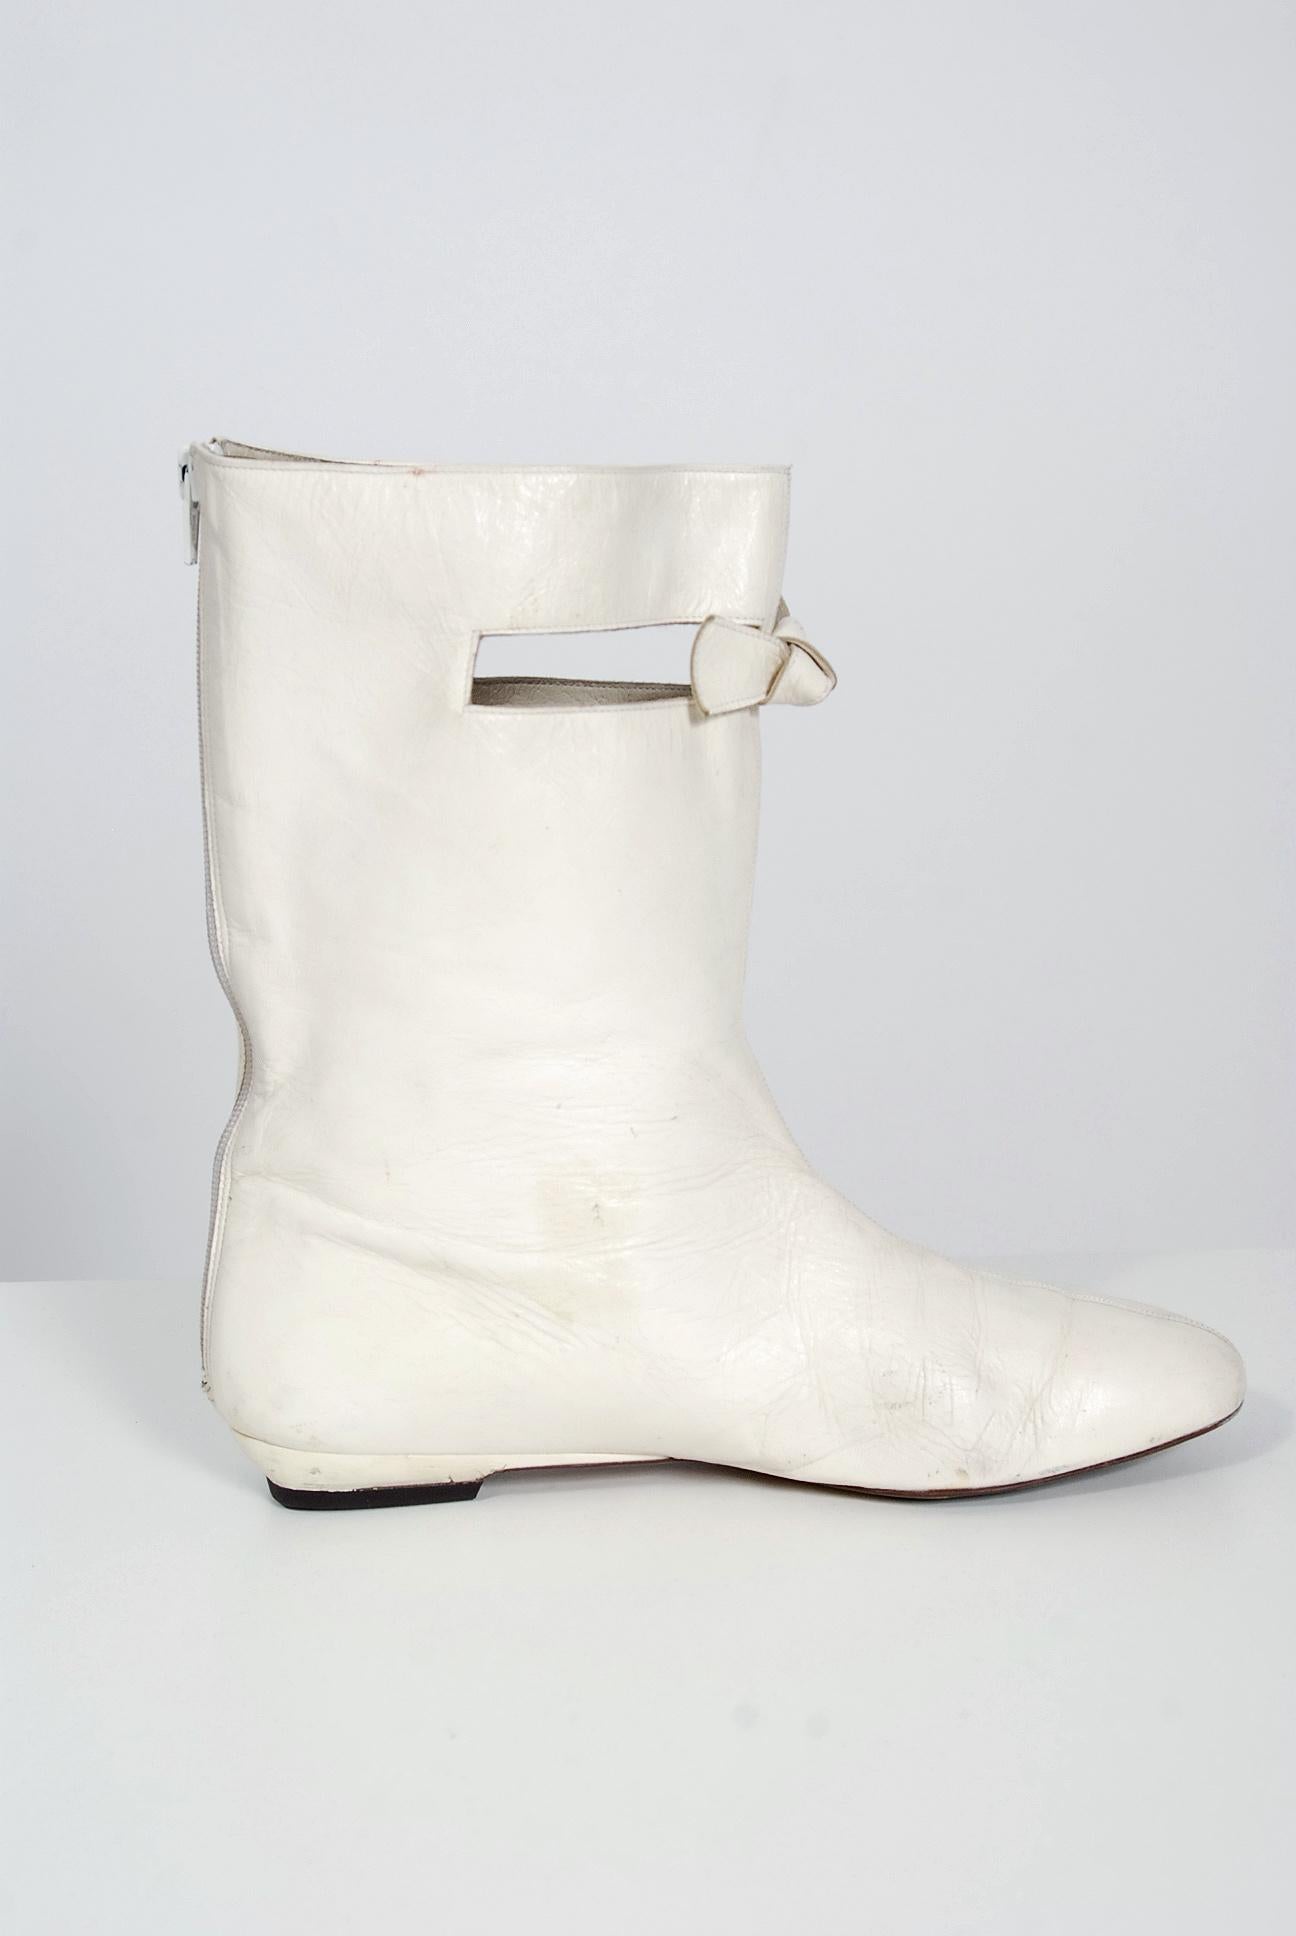 courreges boots 1960s